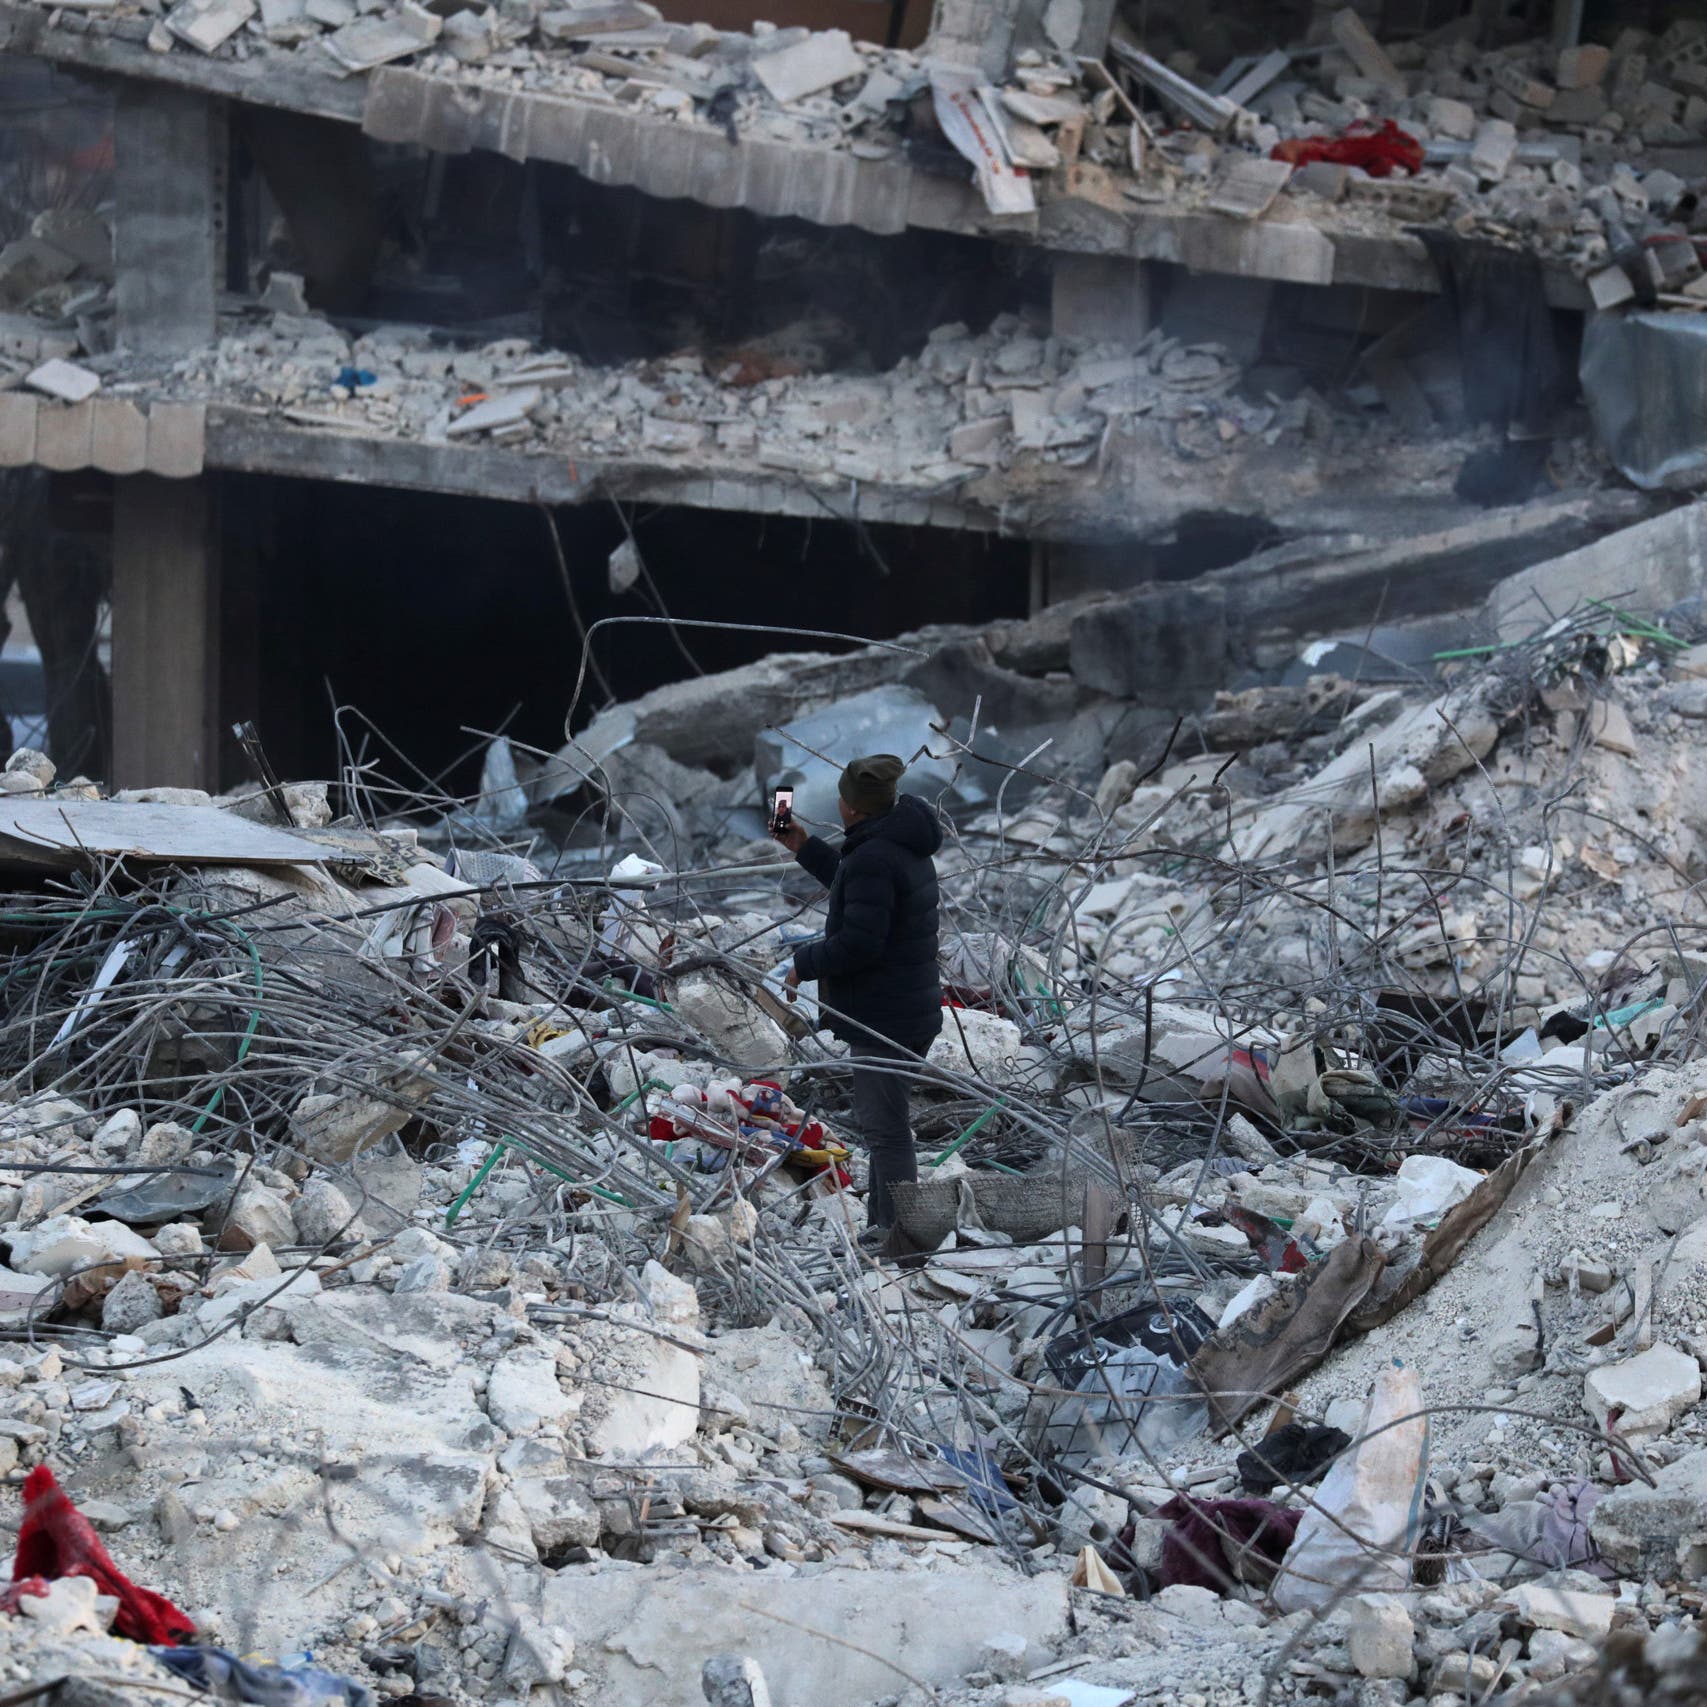 "الأرض غدرت سوريا بزلزال".. ناصيف زيتون يشعل التواصل بأغنية